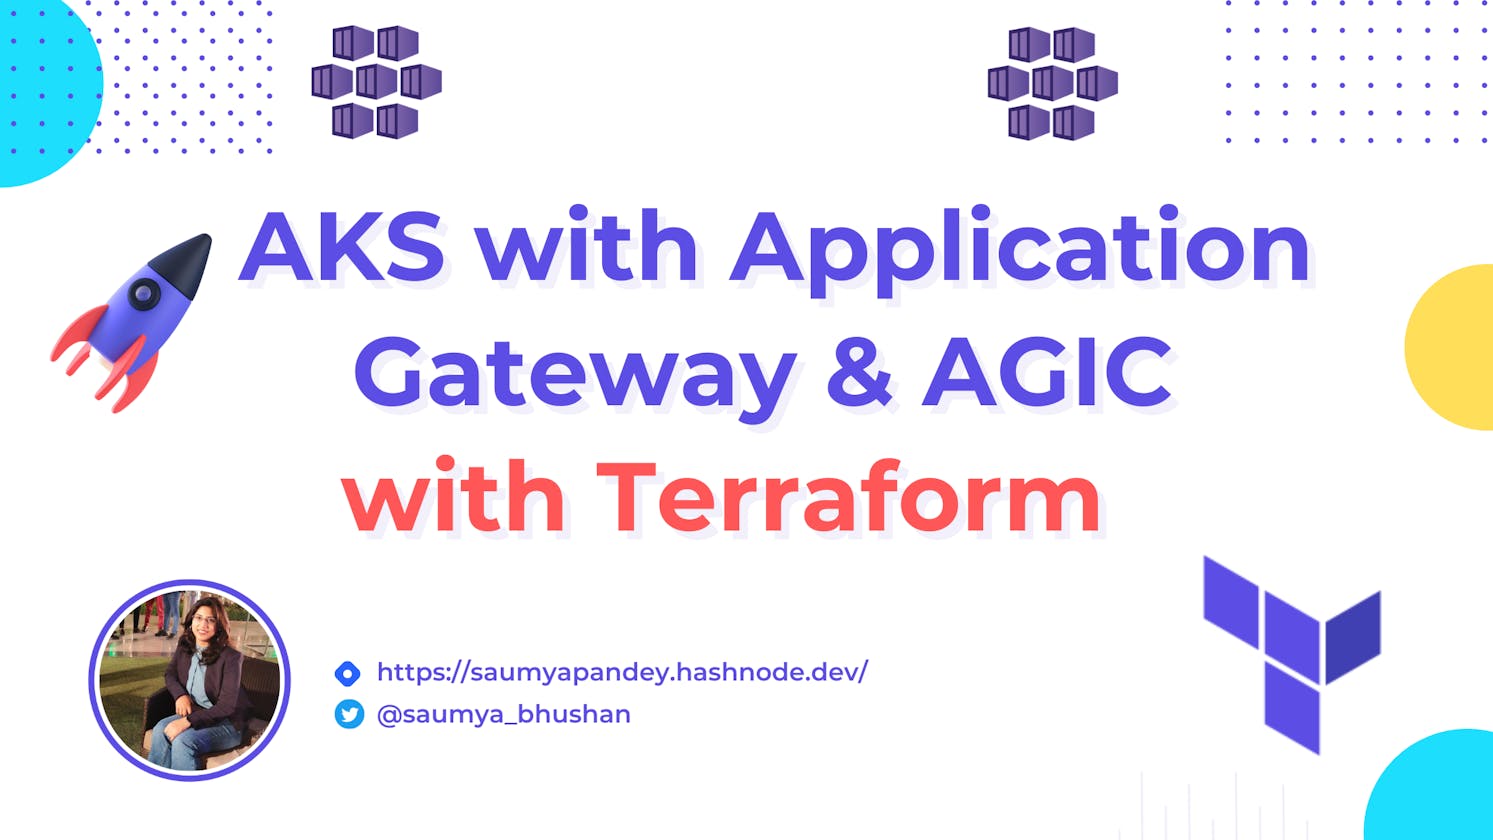 AKS with Application Gateway & AGIC using Terraform